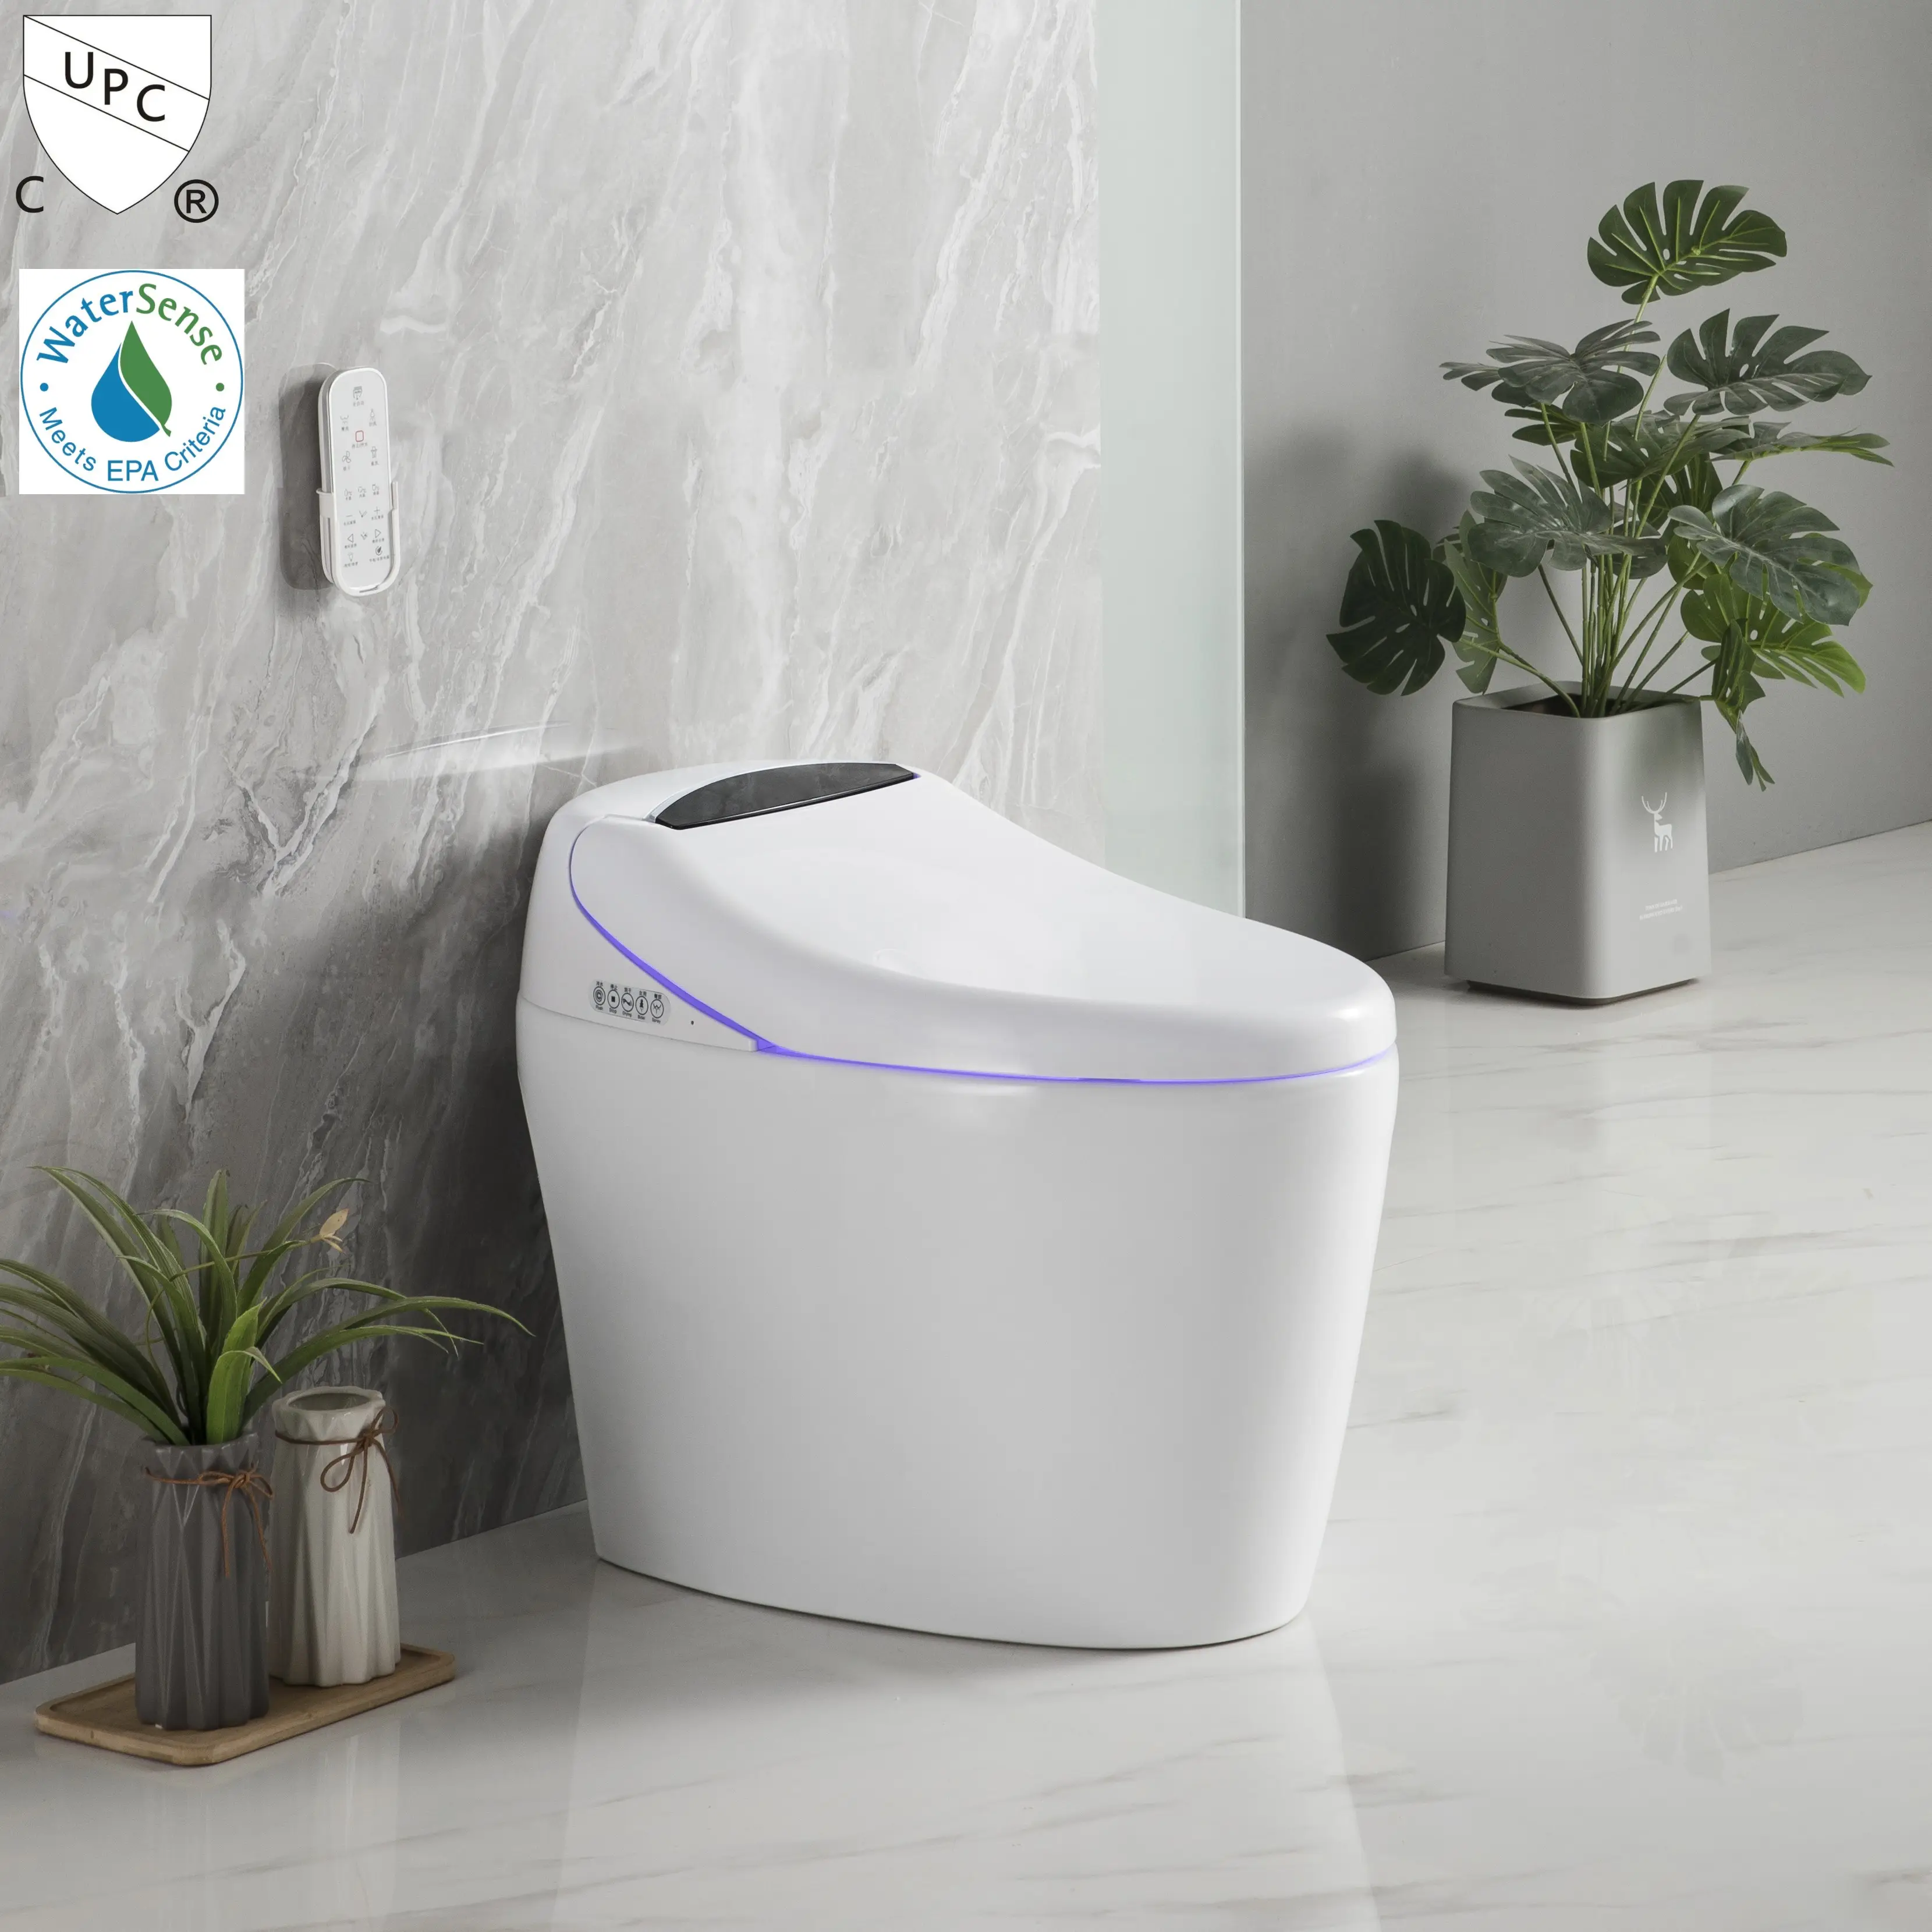 Nieuw Ontwerp Hot Sale Cupc Badkamer Besparen Water Intelligente Waterkast Automatische Zelfreinige Slimme Keramische Toiletpot Met Bidet